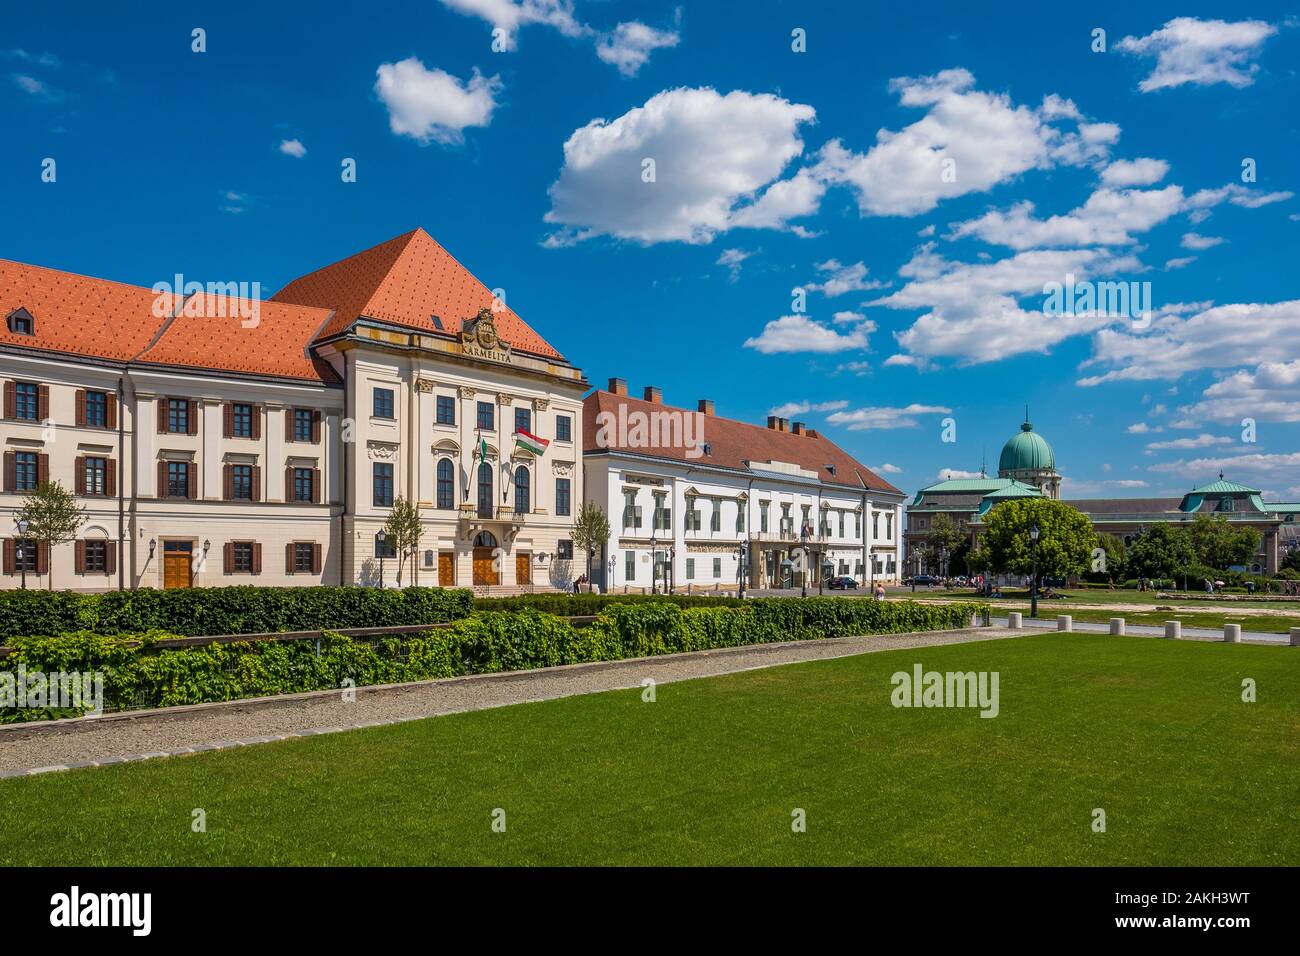 Ungarn, Budapest, die budavár Schloss oder Burg Buda Palast, UNESCO Weltkulturerbe Stockfoto